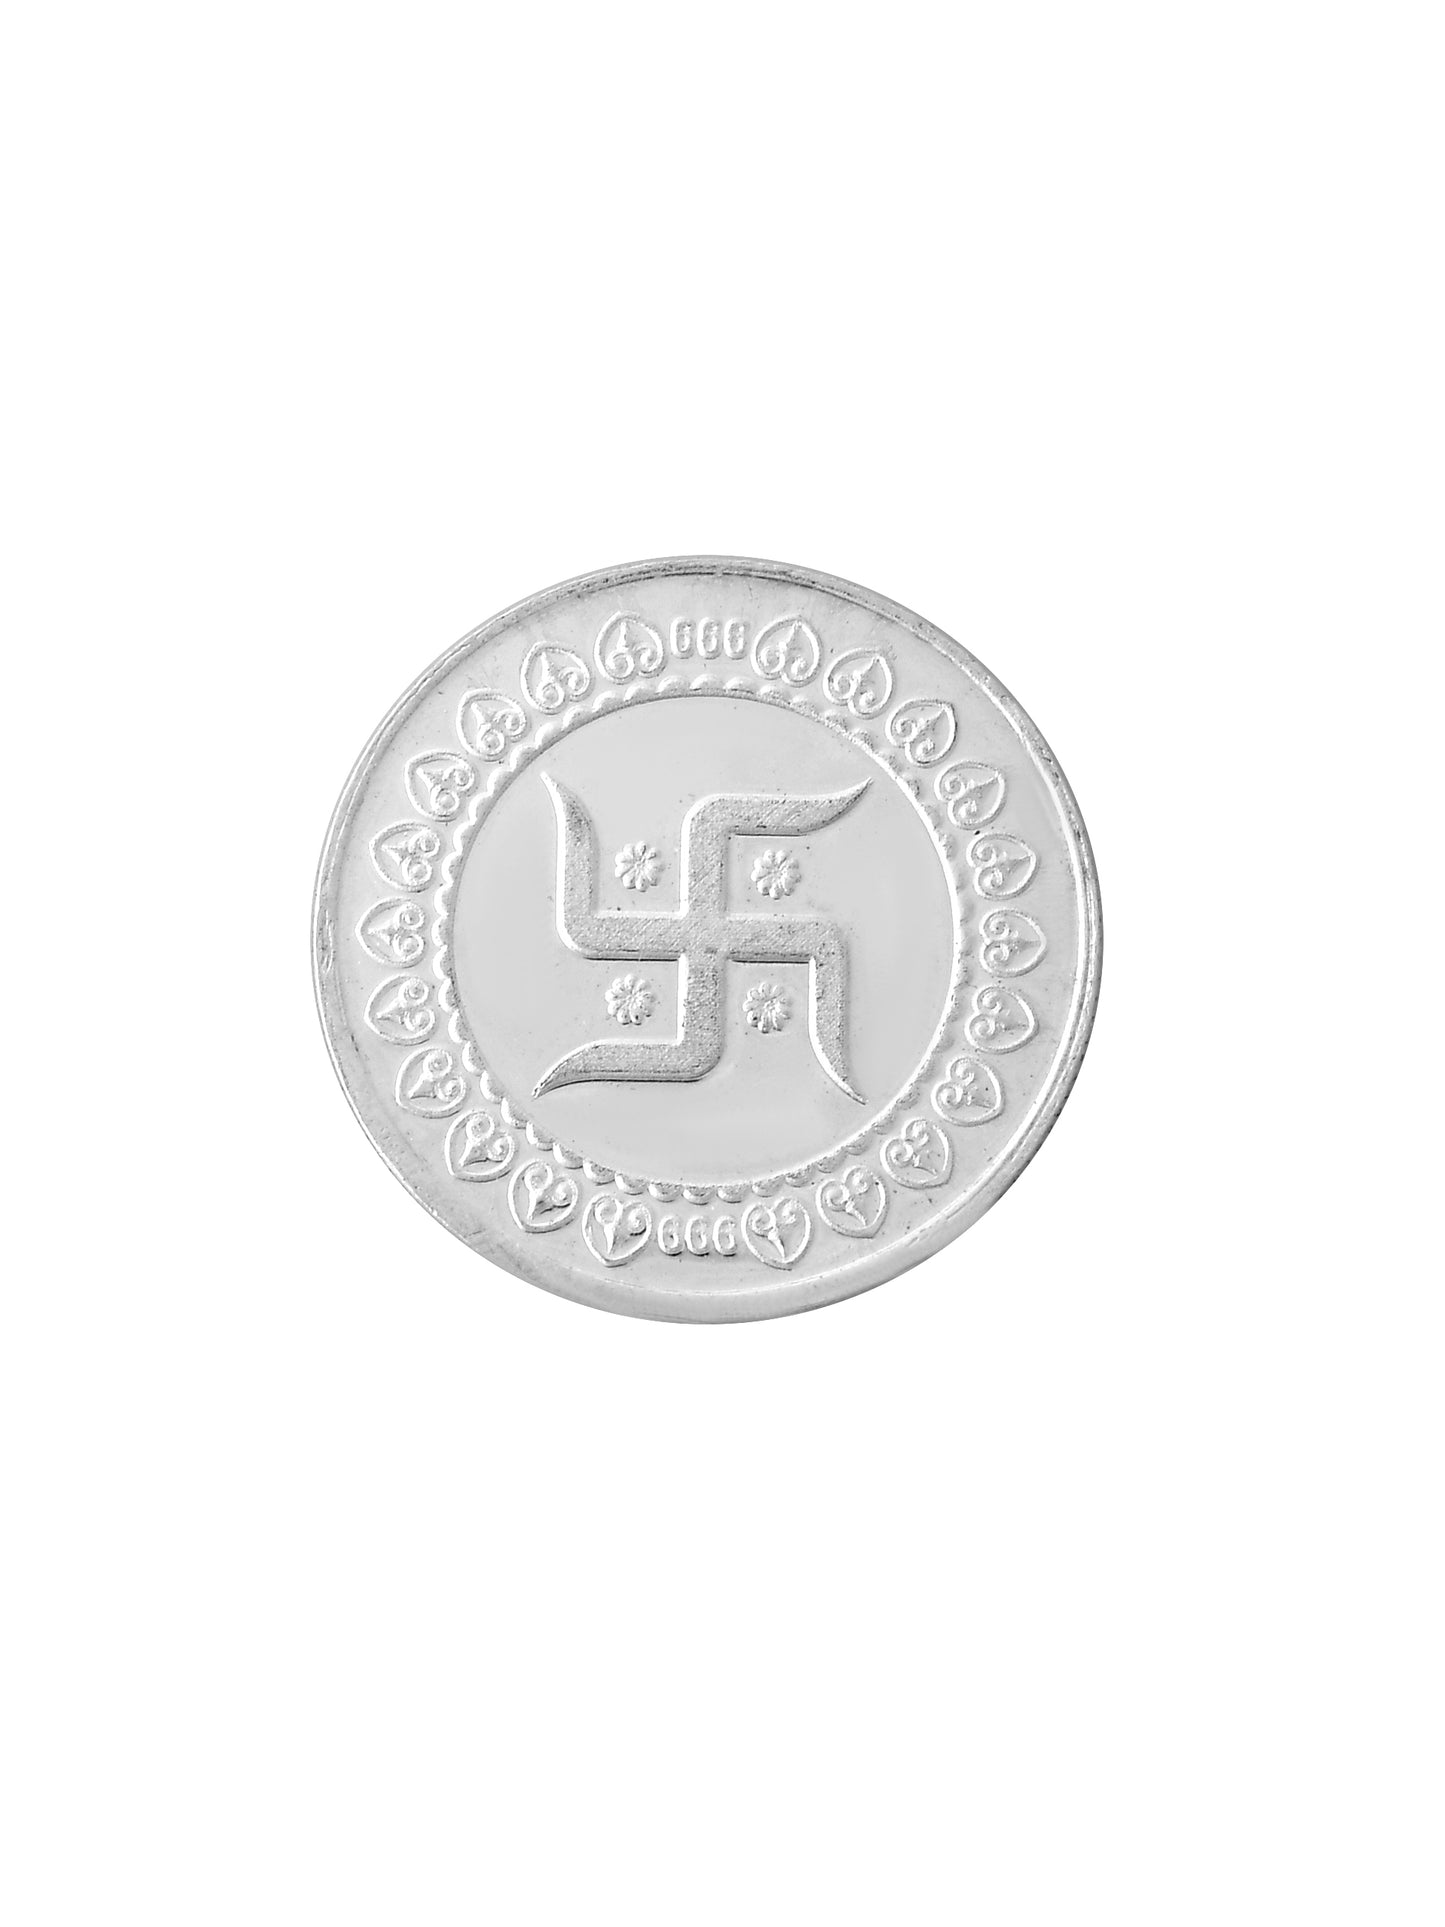 Silver Swastika 5 Grams Circular Shaped 999 silver coin